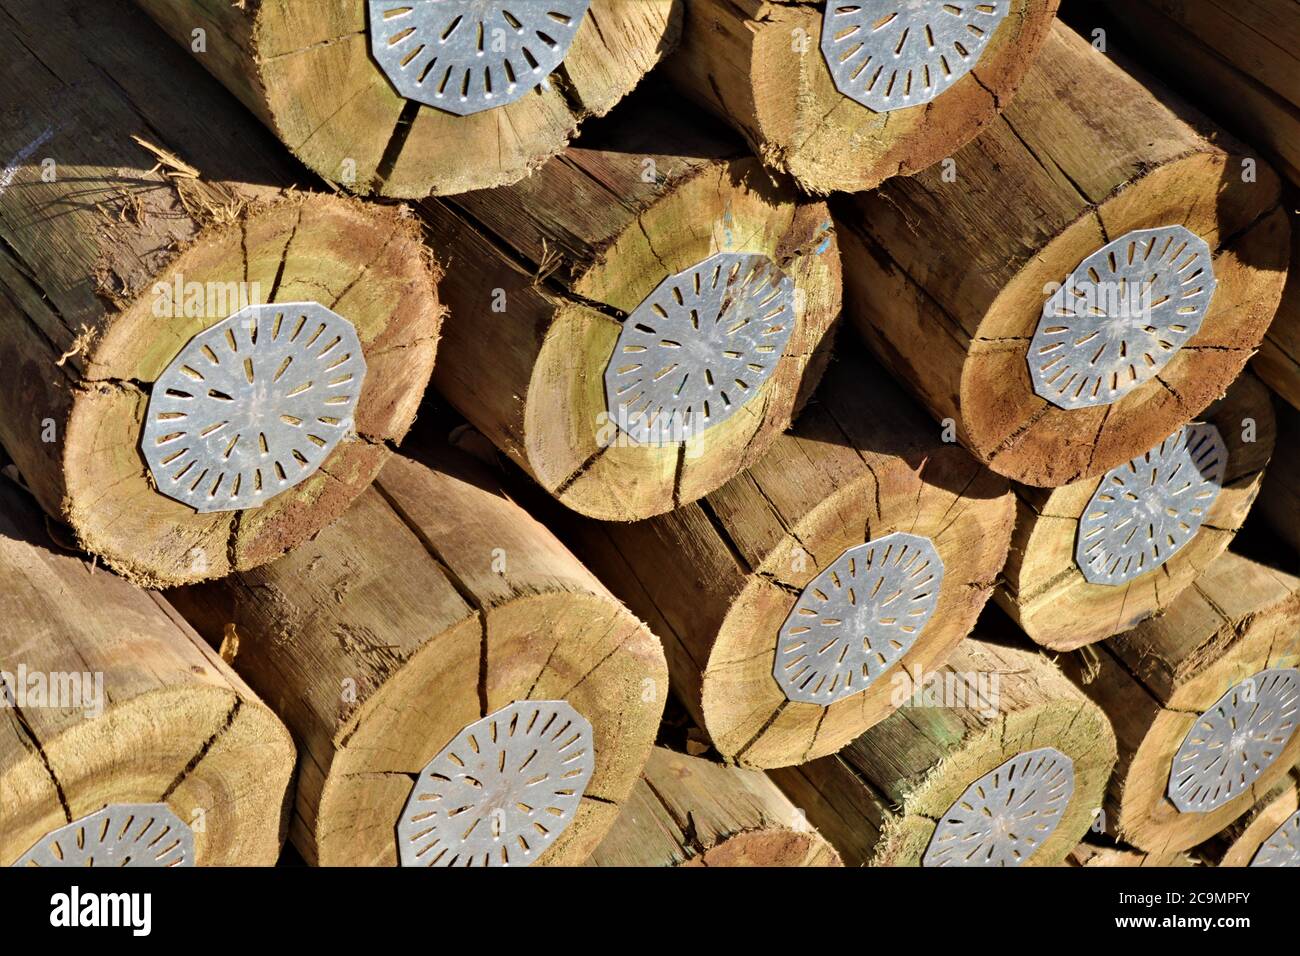 Pali di legno trattati con (CCA) questo è un conservante di legno contenente rame, cromo e arsenico. Foto Stock